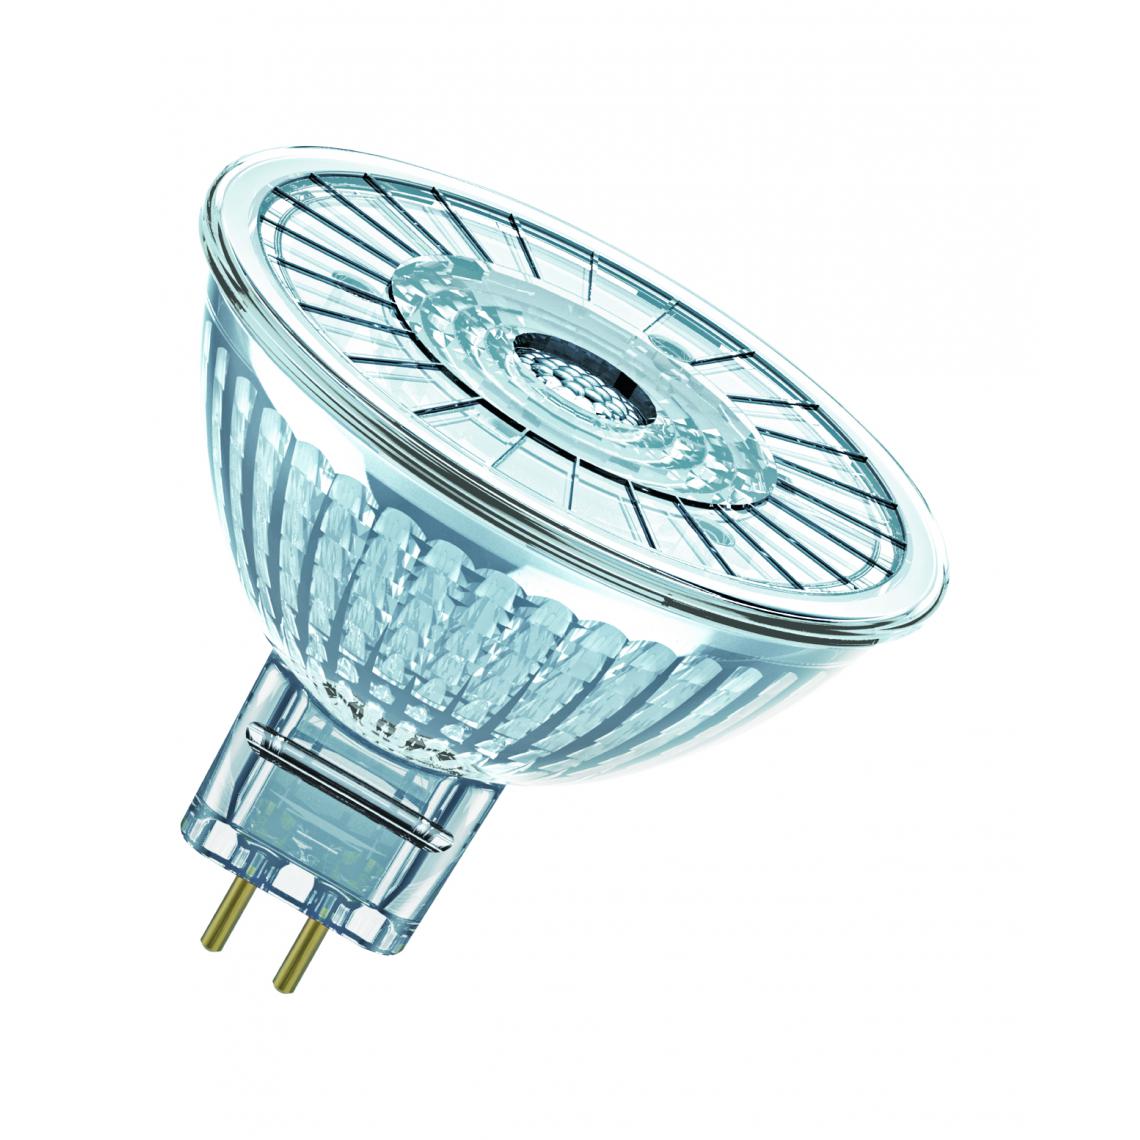 Osram - ampoule à led - osram parathom - gu5.3 - 3.8w - 4000k - 350 lm - mr16 - osram 431157 - Ampoules LED